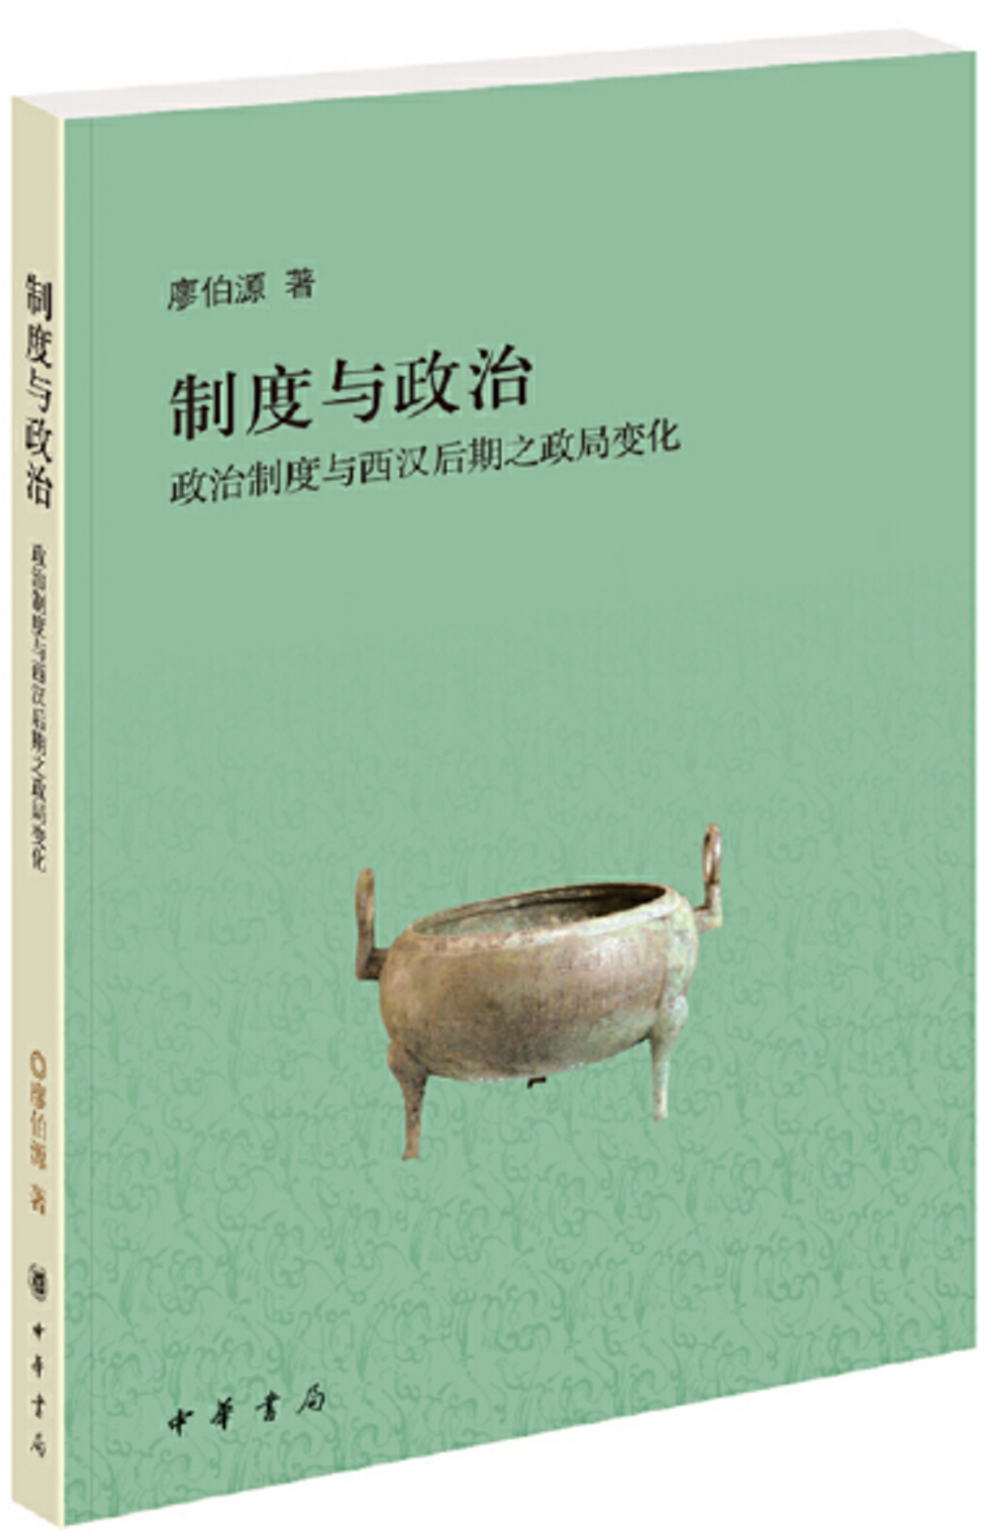 制度與政治：政治制度與西漢后期之政局變化